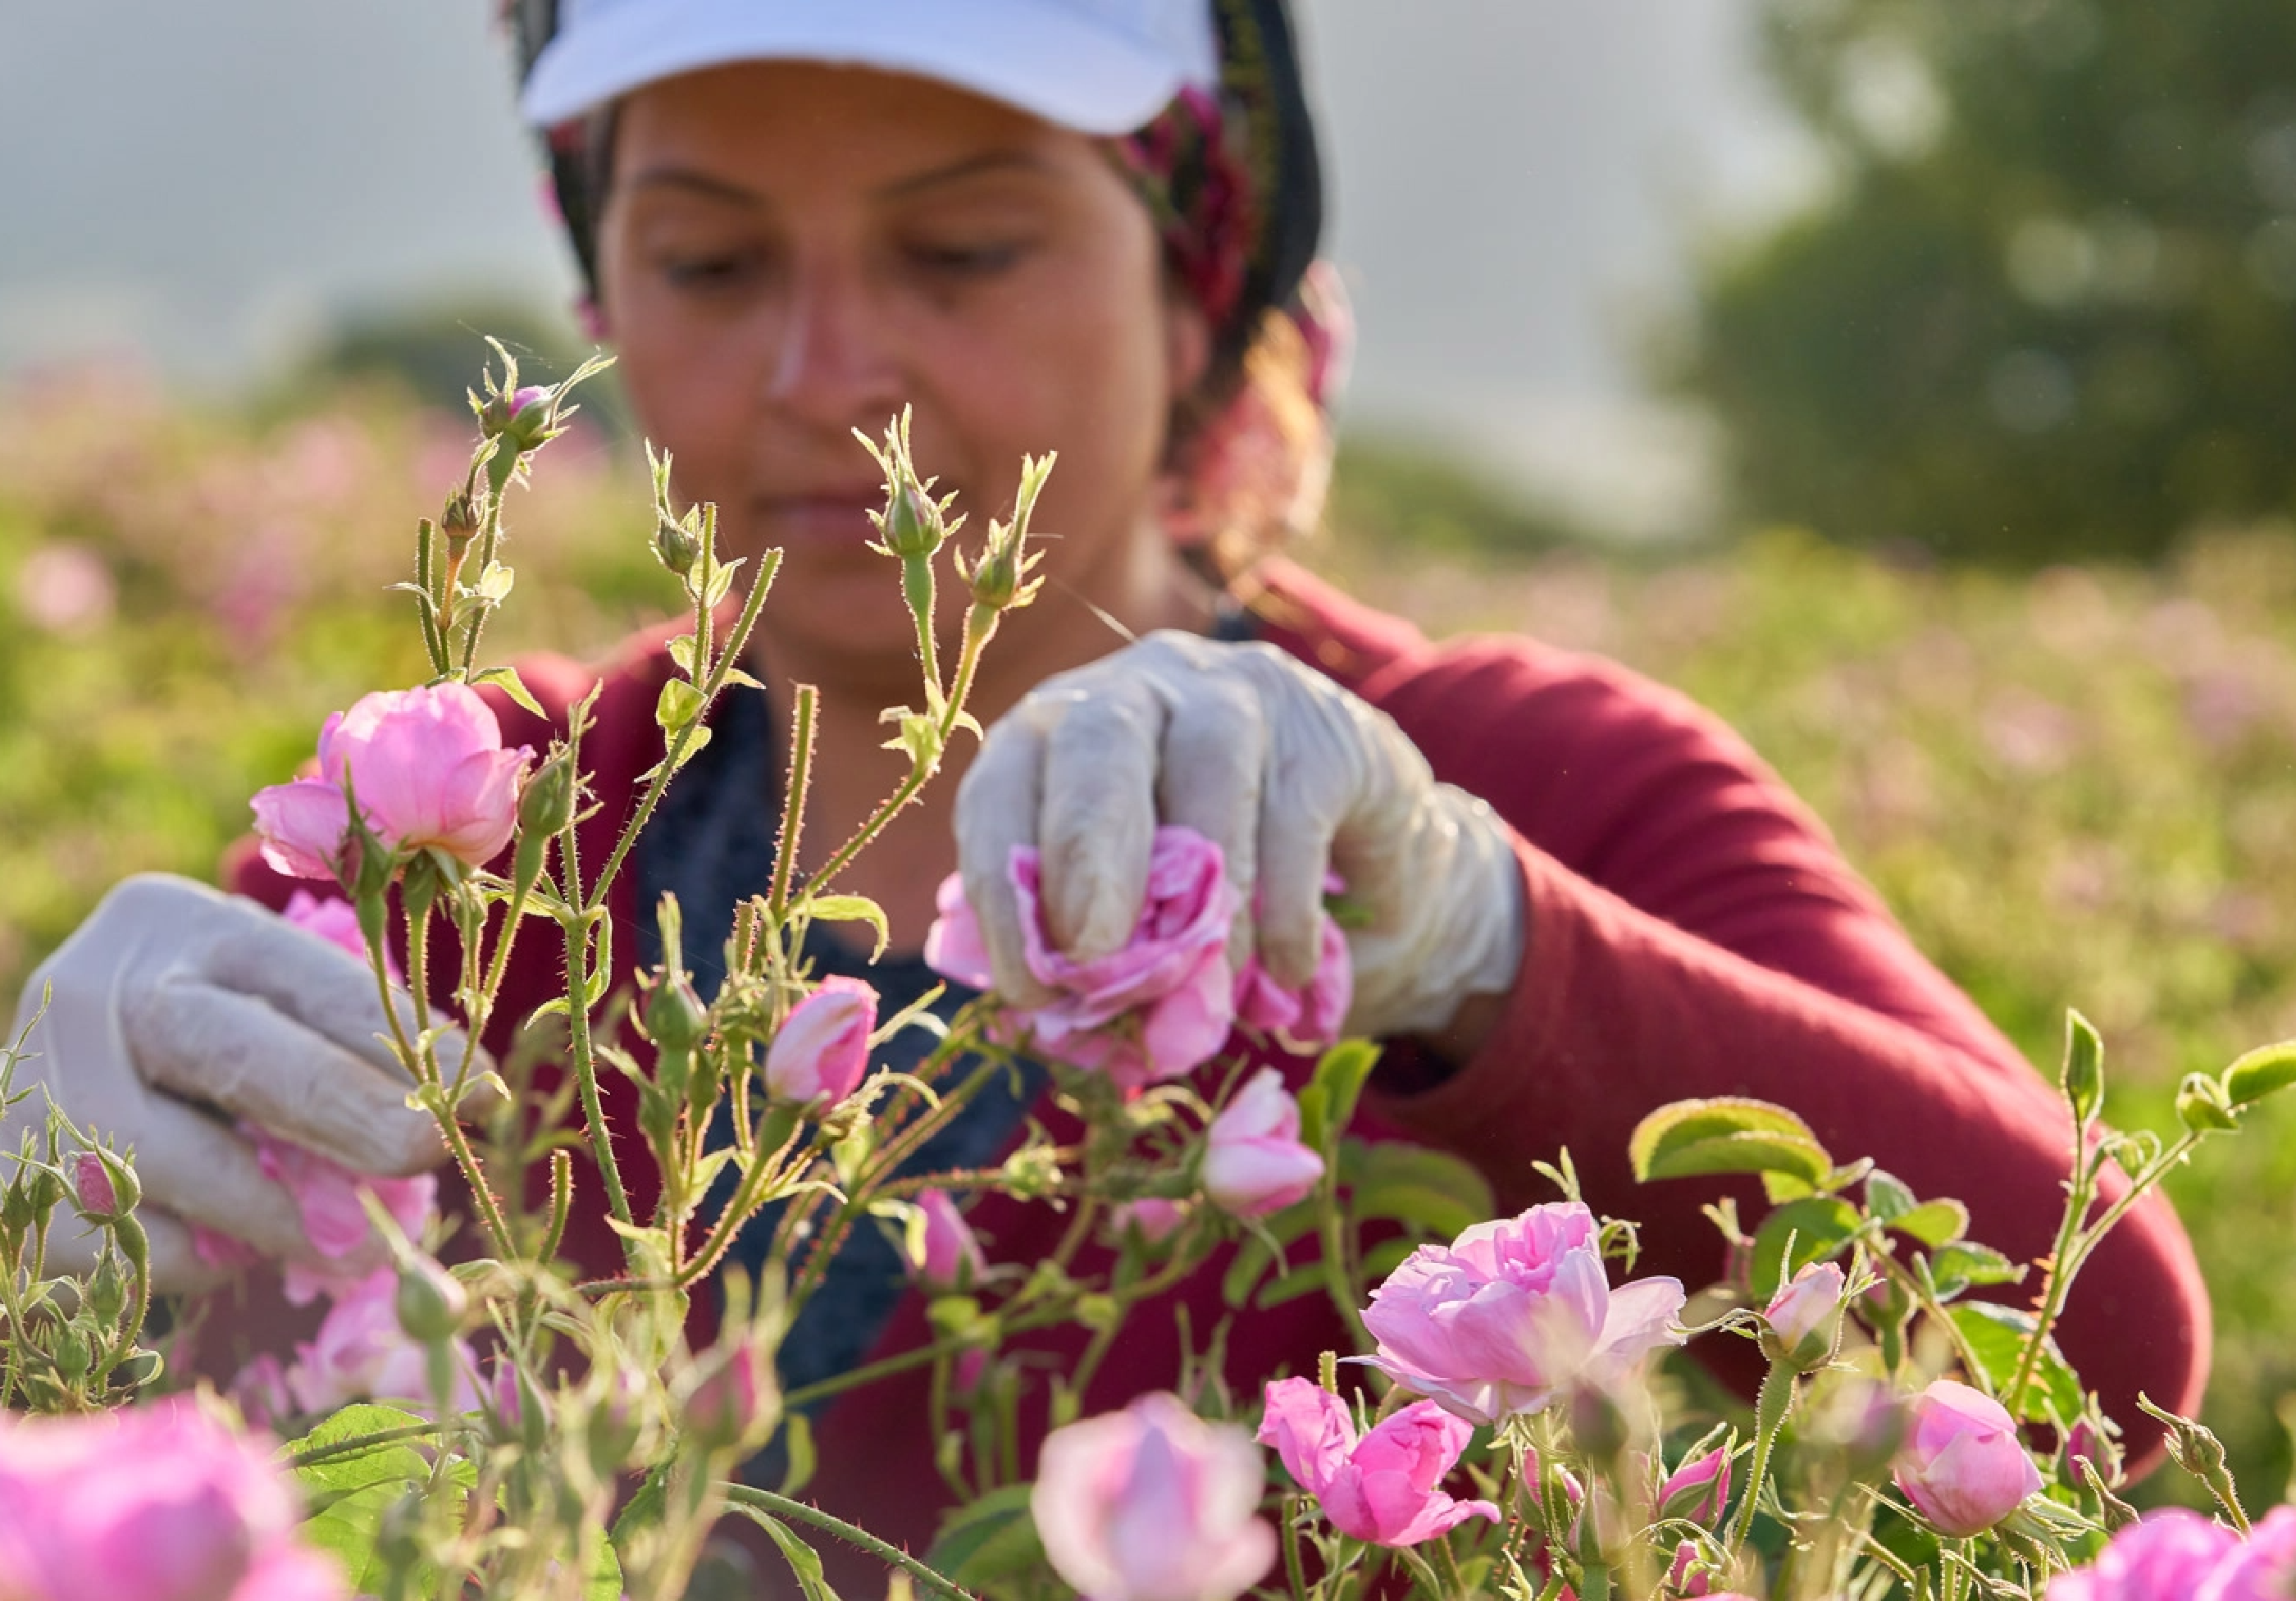 Femme cueillant des fleurs dans un champ.